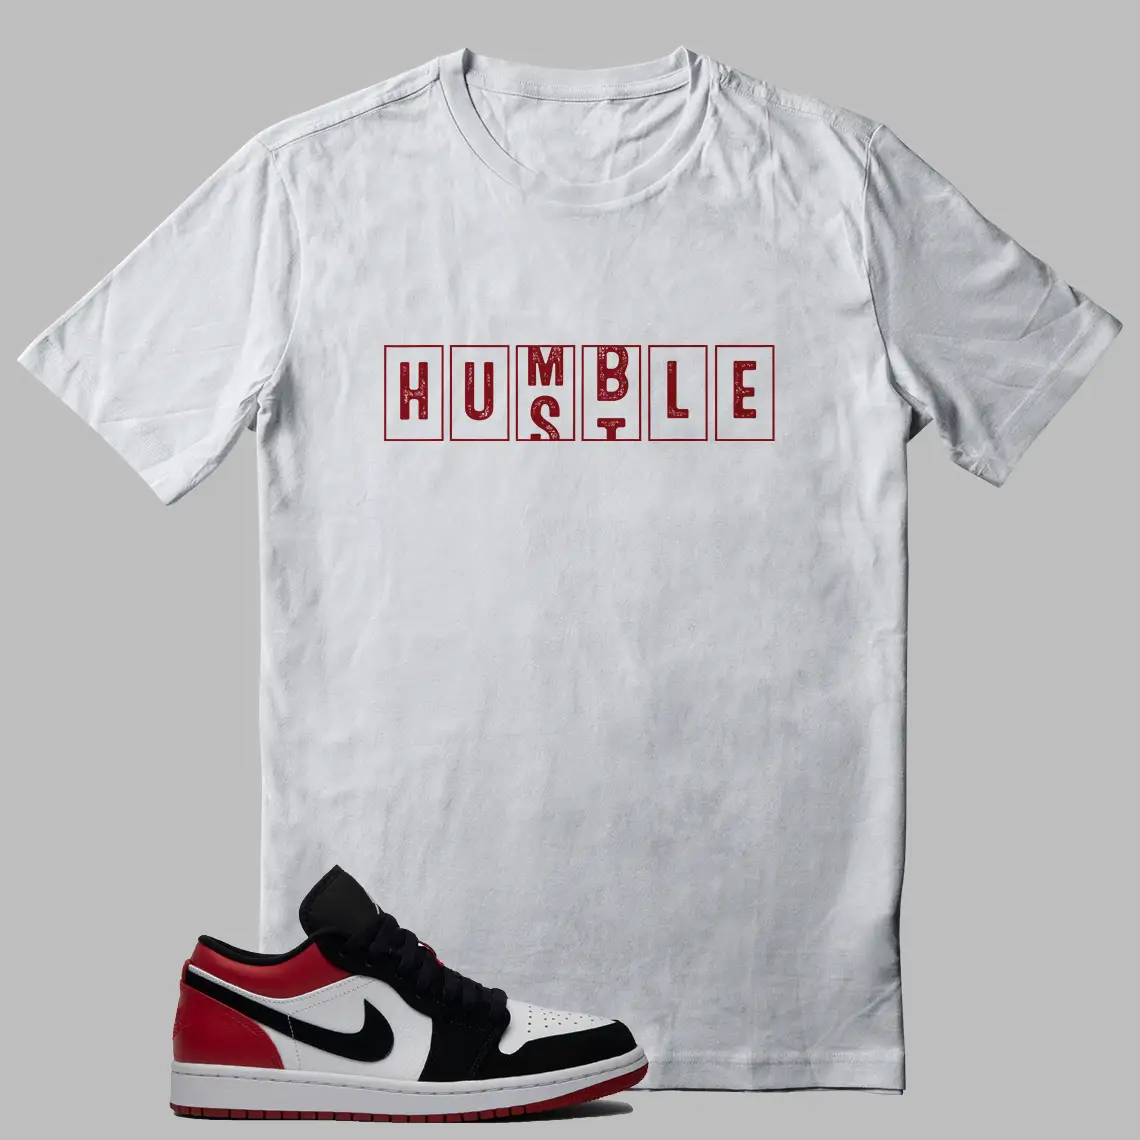 Shirt Jordan 1 Low Black Toe - Humble Hustle Graphic